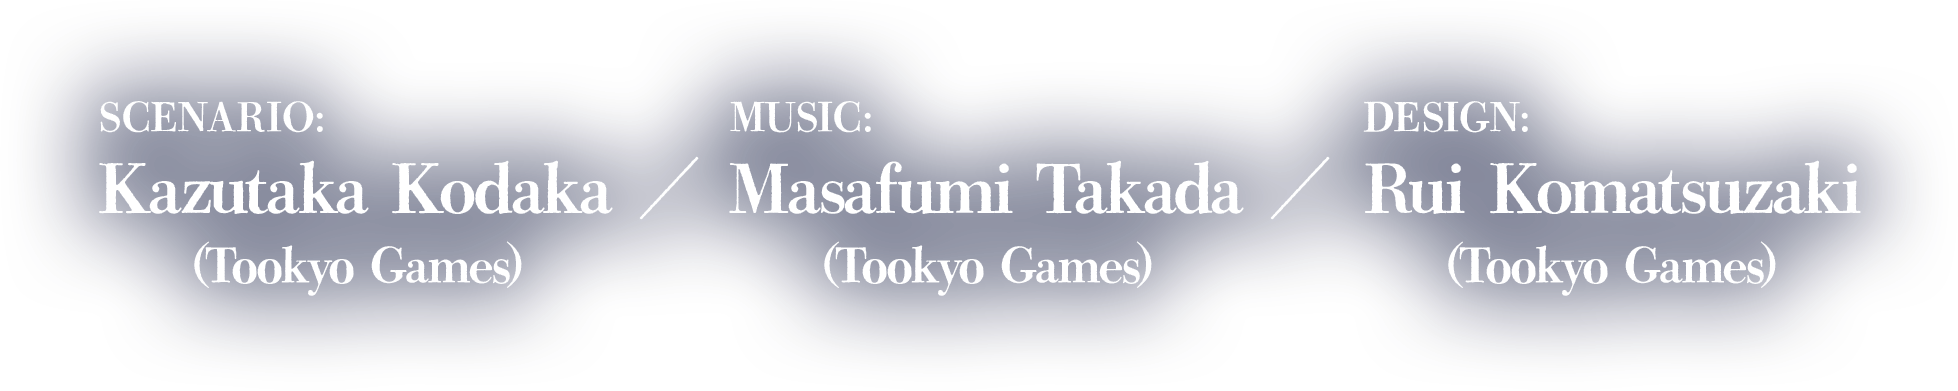 Scenario:Kazutaka Kodaka (Tookyo Games)Music:Masafumi Takada (Tookyo Games)Design:Rui Komatsuzaki (Tookyo Games)